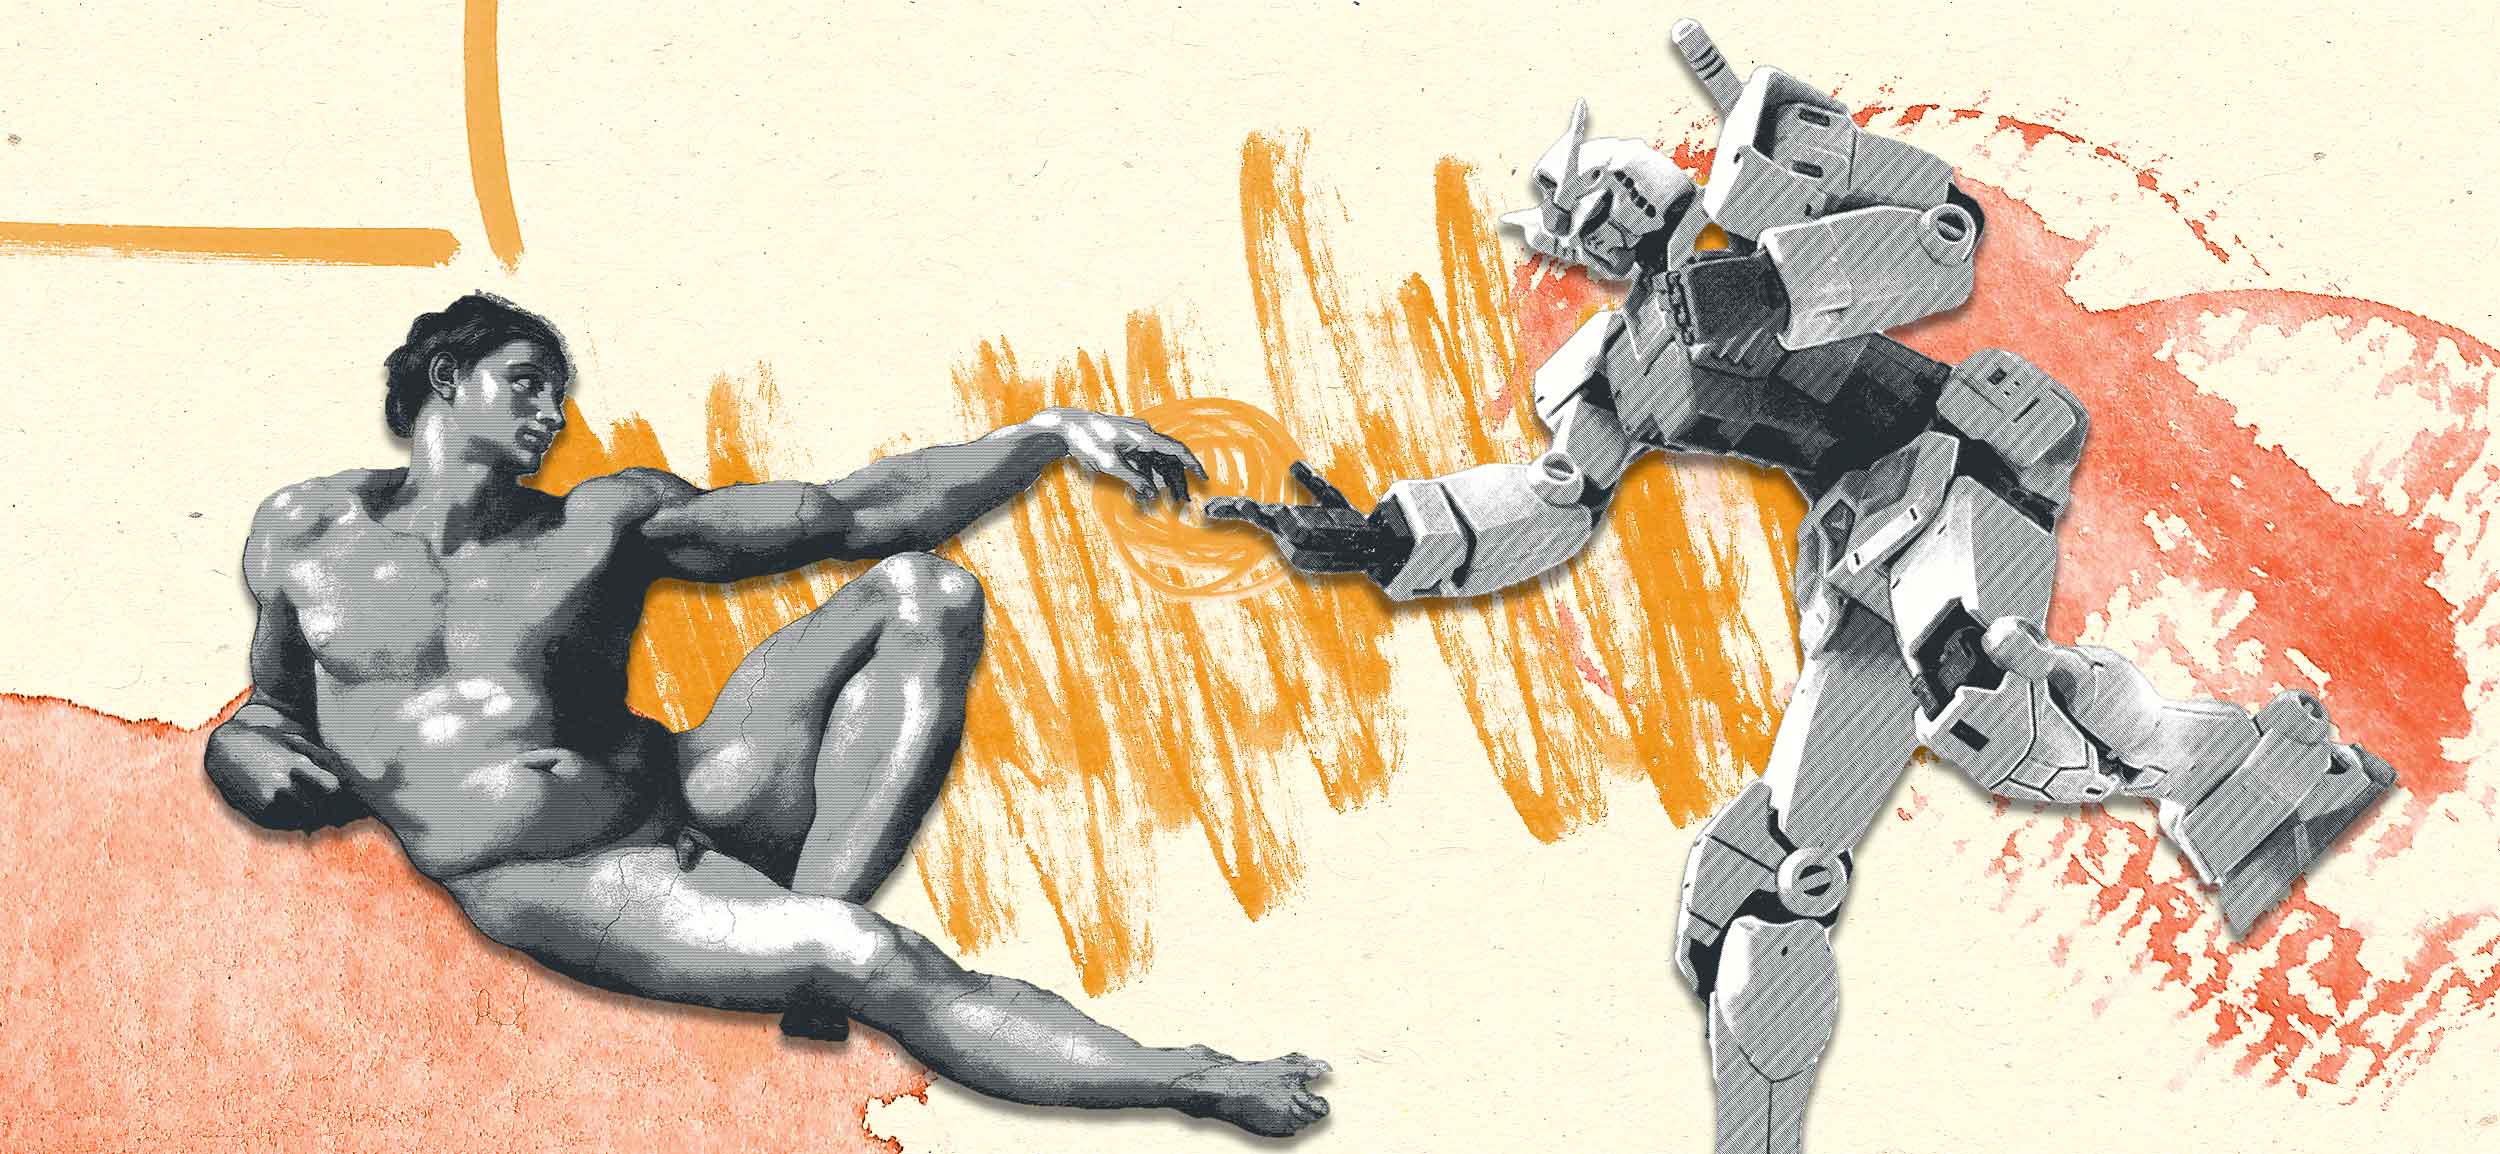 liegender Mann und Roboter berühren sich im Michelangelo-Stil mit den Fingern